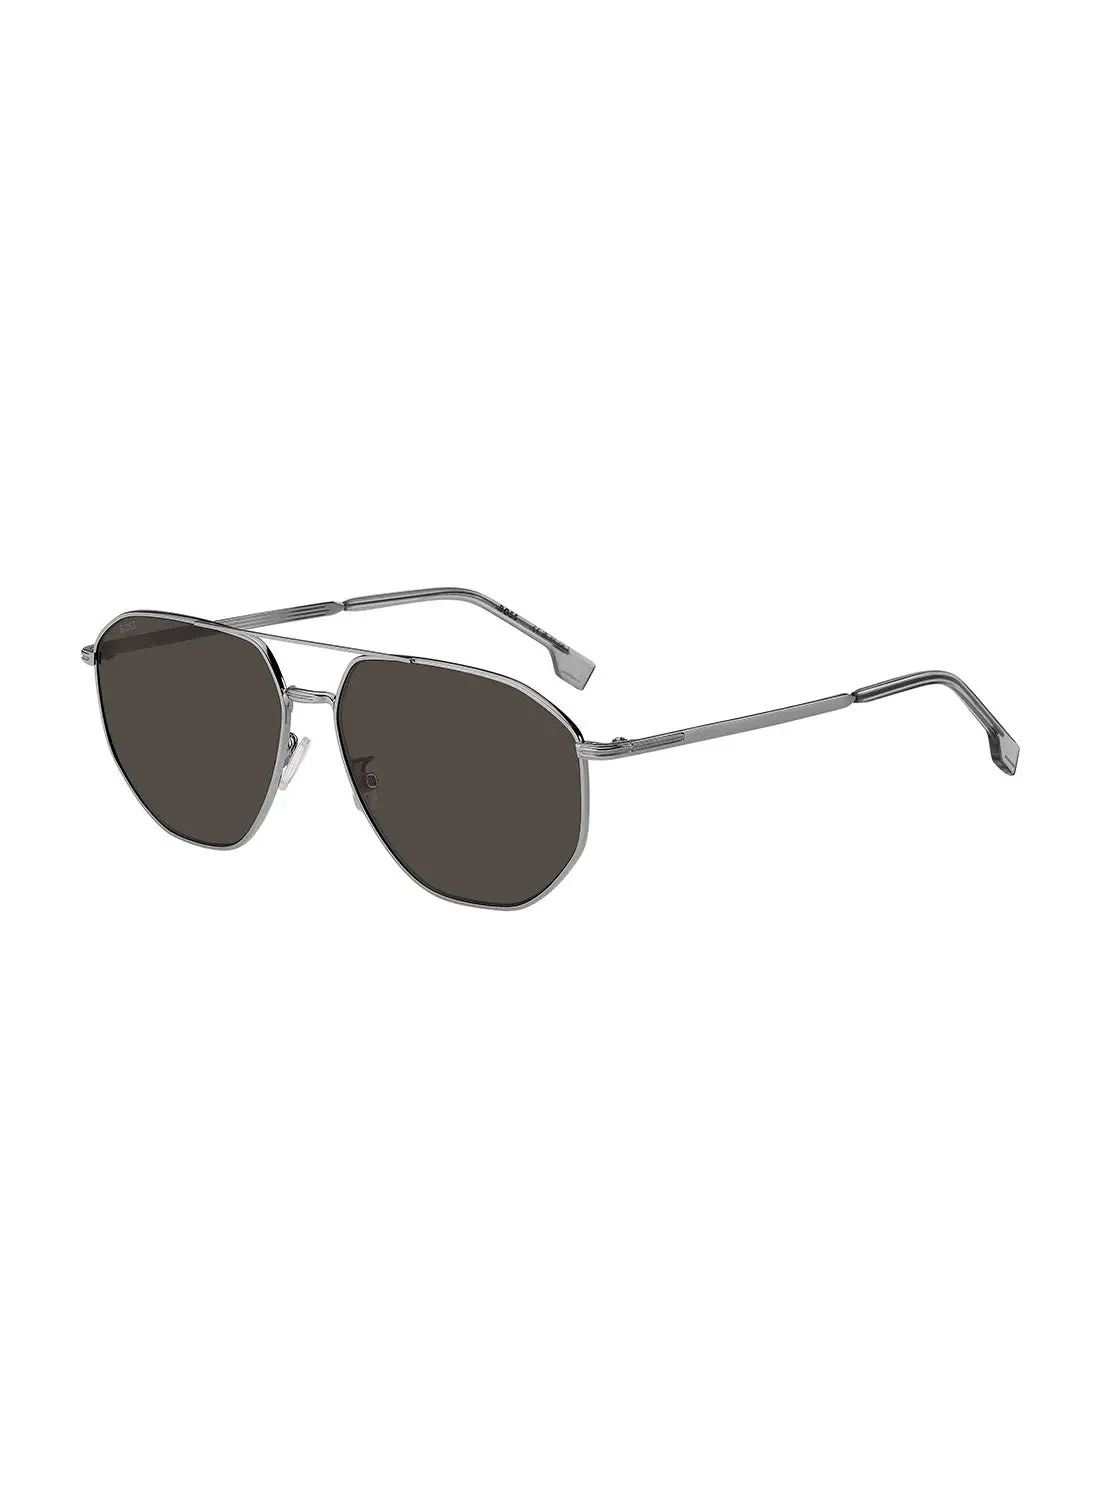 HUGO BOSS Men's UV Protection Navigator Sunglasses - Boss 1612/F/Sk Grey Millimeter - Lens Size: 61 Mm